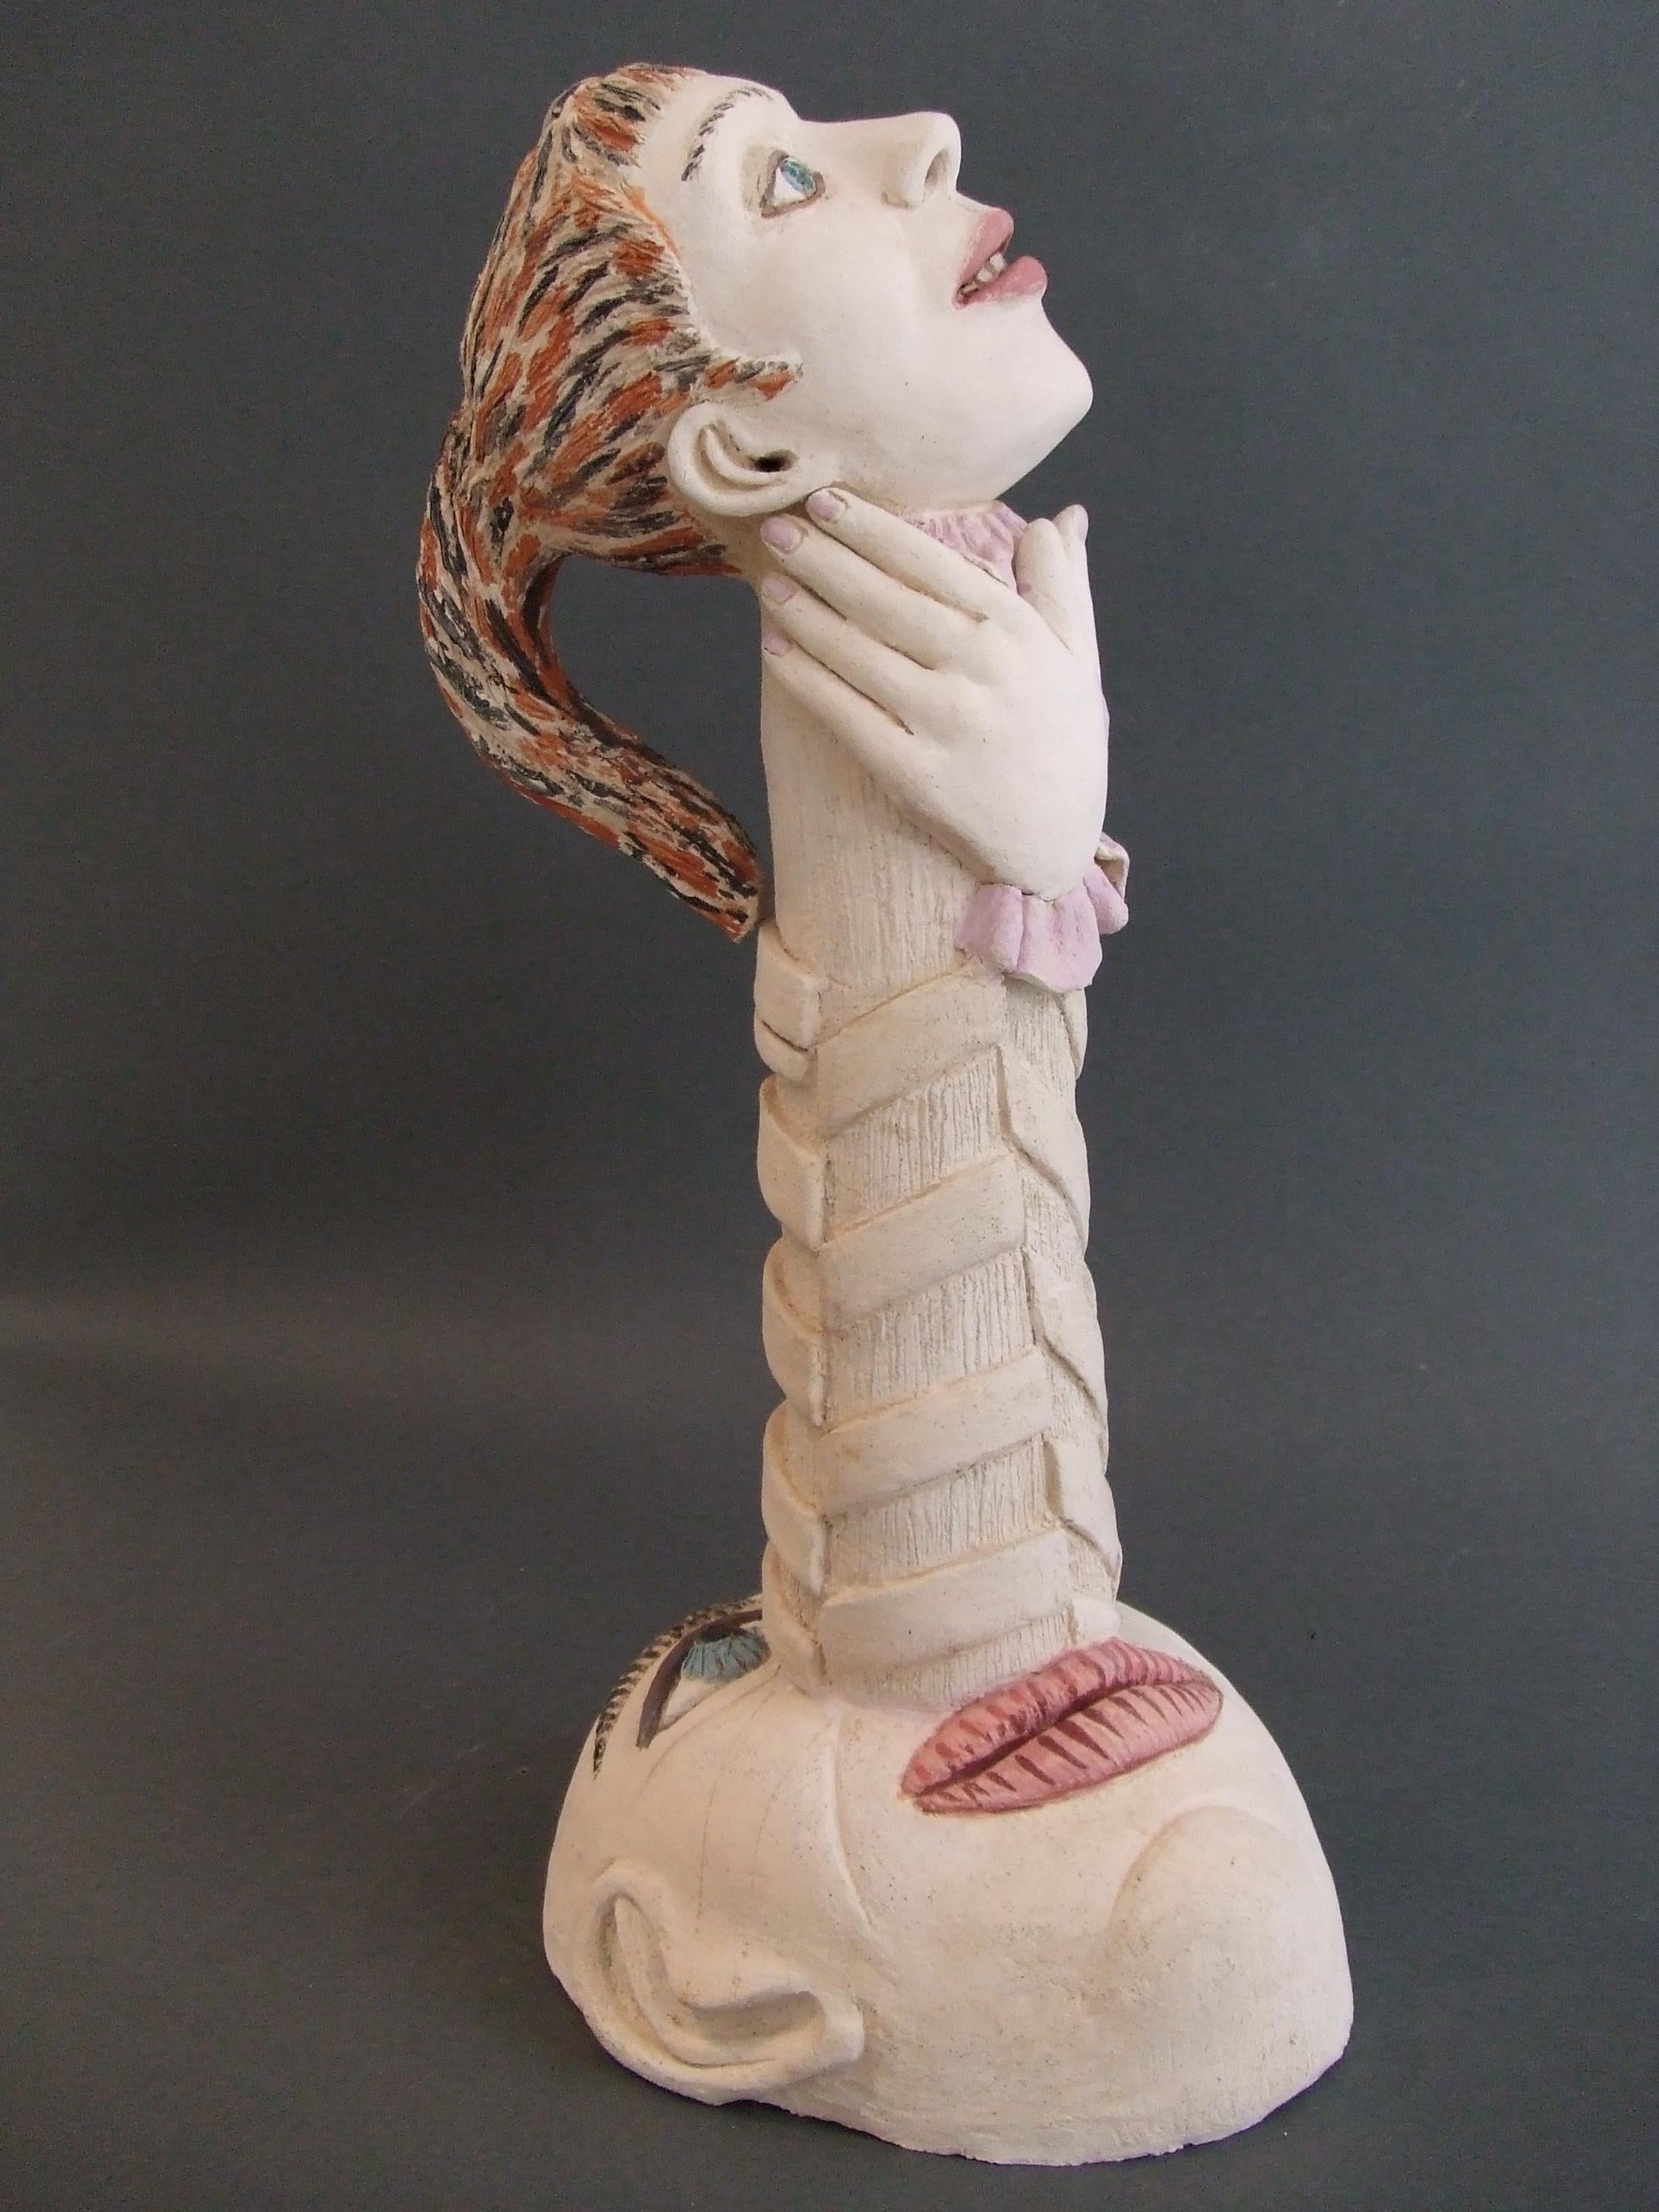 Einzigartige Terrakotta-Skulptur
Vom Künstler handsigniert

Die kontemplativen Kreaturen von Nili Pincas, von extremer Raffinesse, laden zur Stille ein.
Diese Isolierung des geformten Wesens ergreift und beruhigt, während sie gleichzeitig Fragen